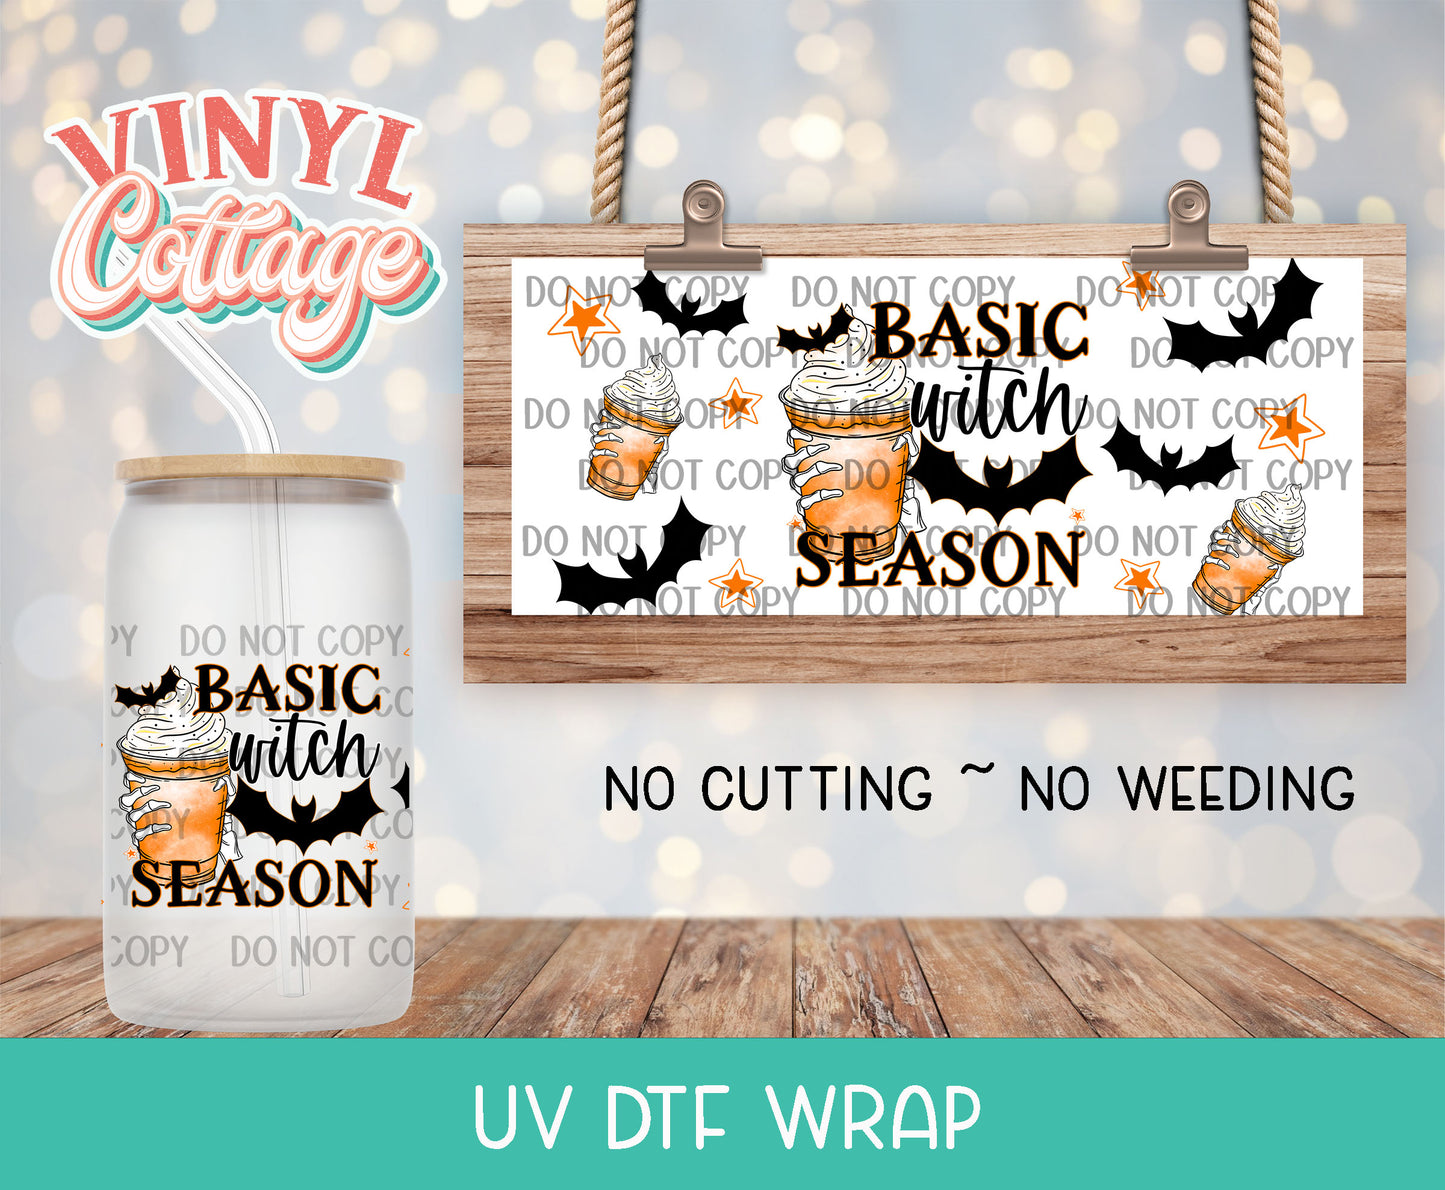 38UV Basic Witch Season ~ UV DTF Wrap